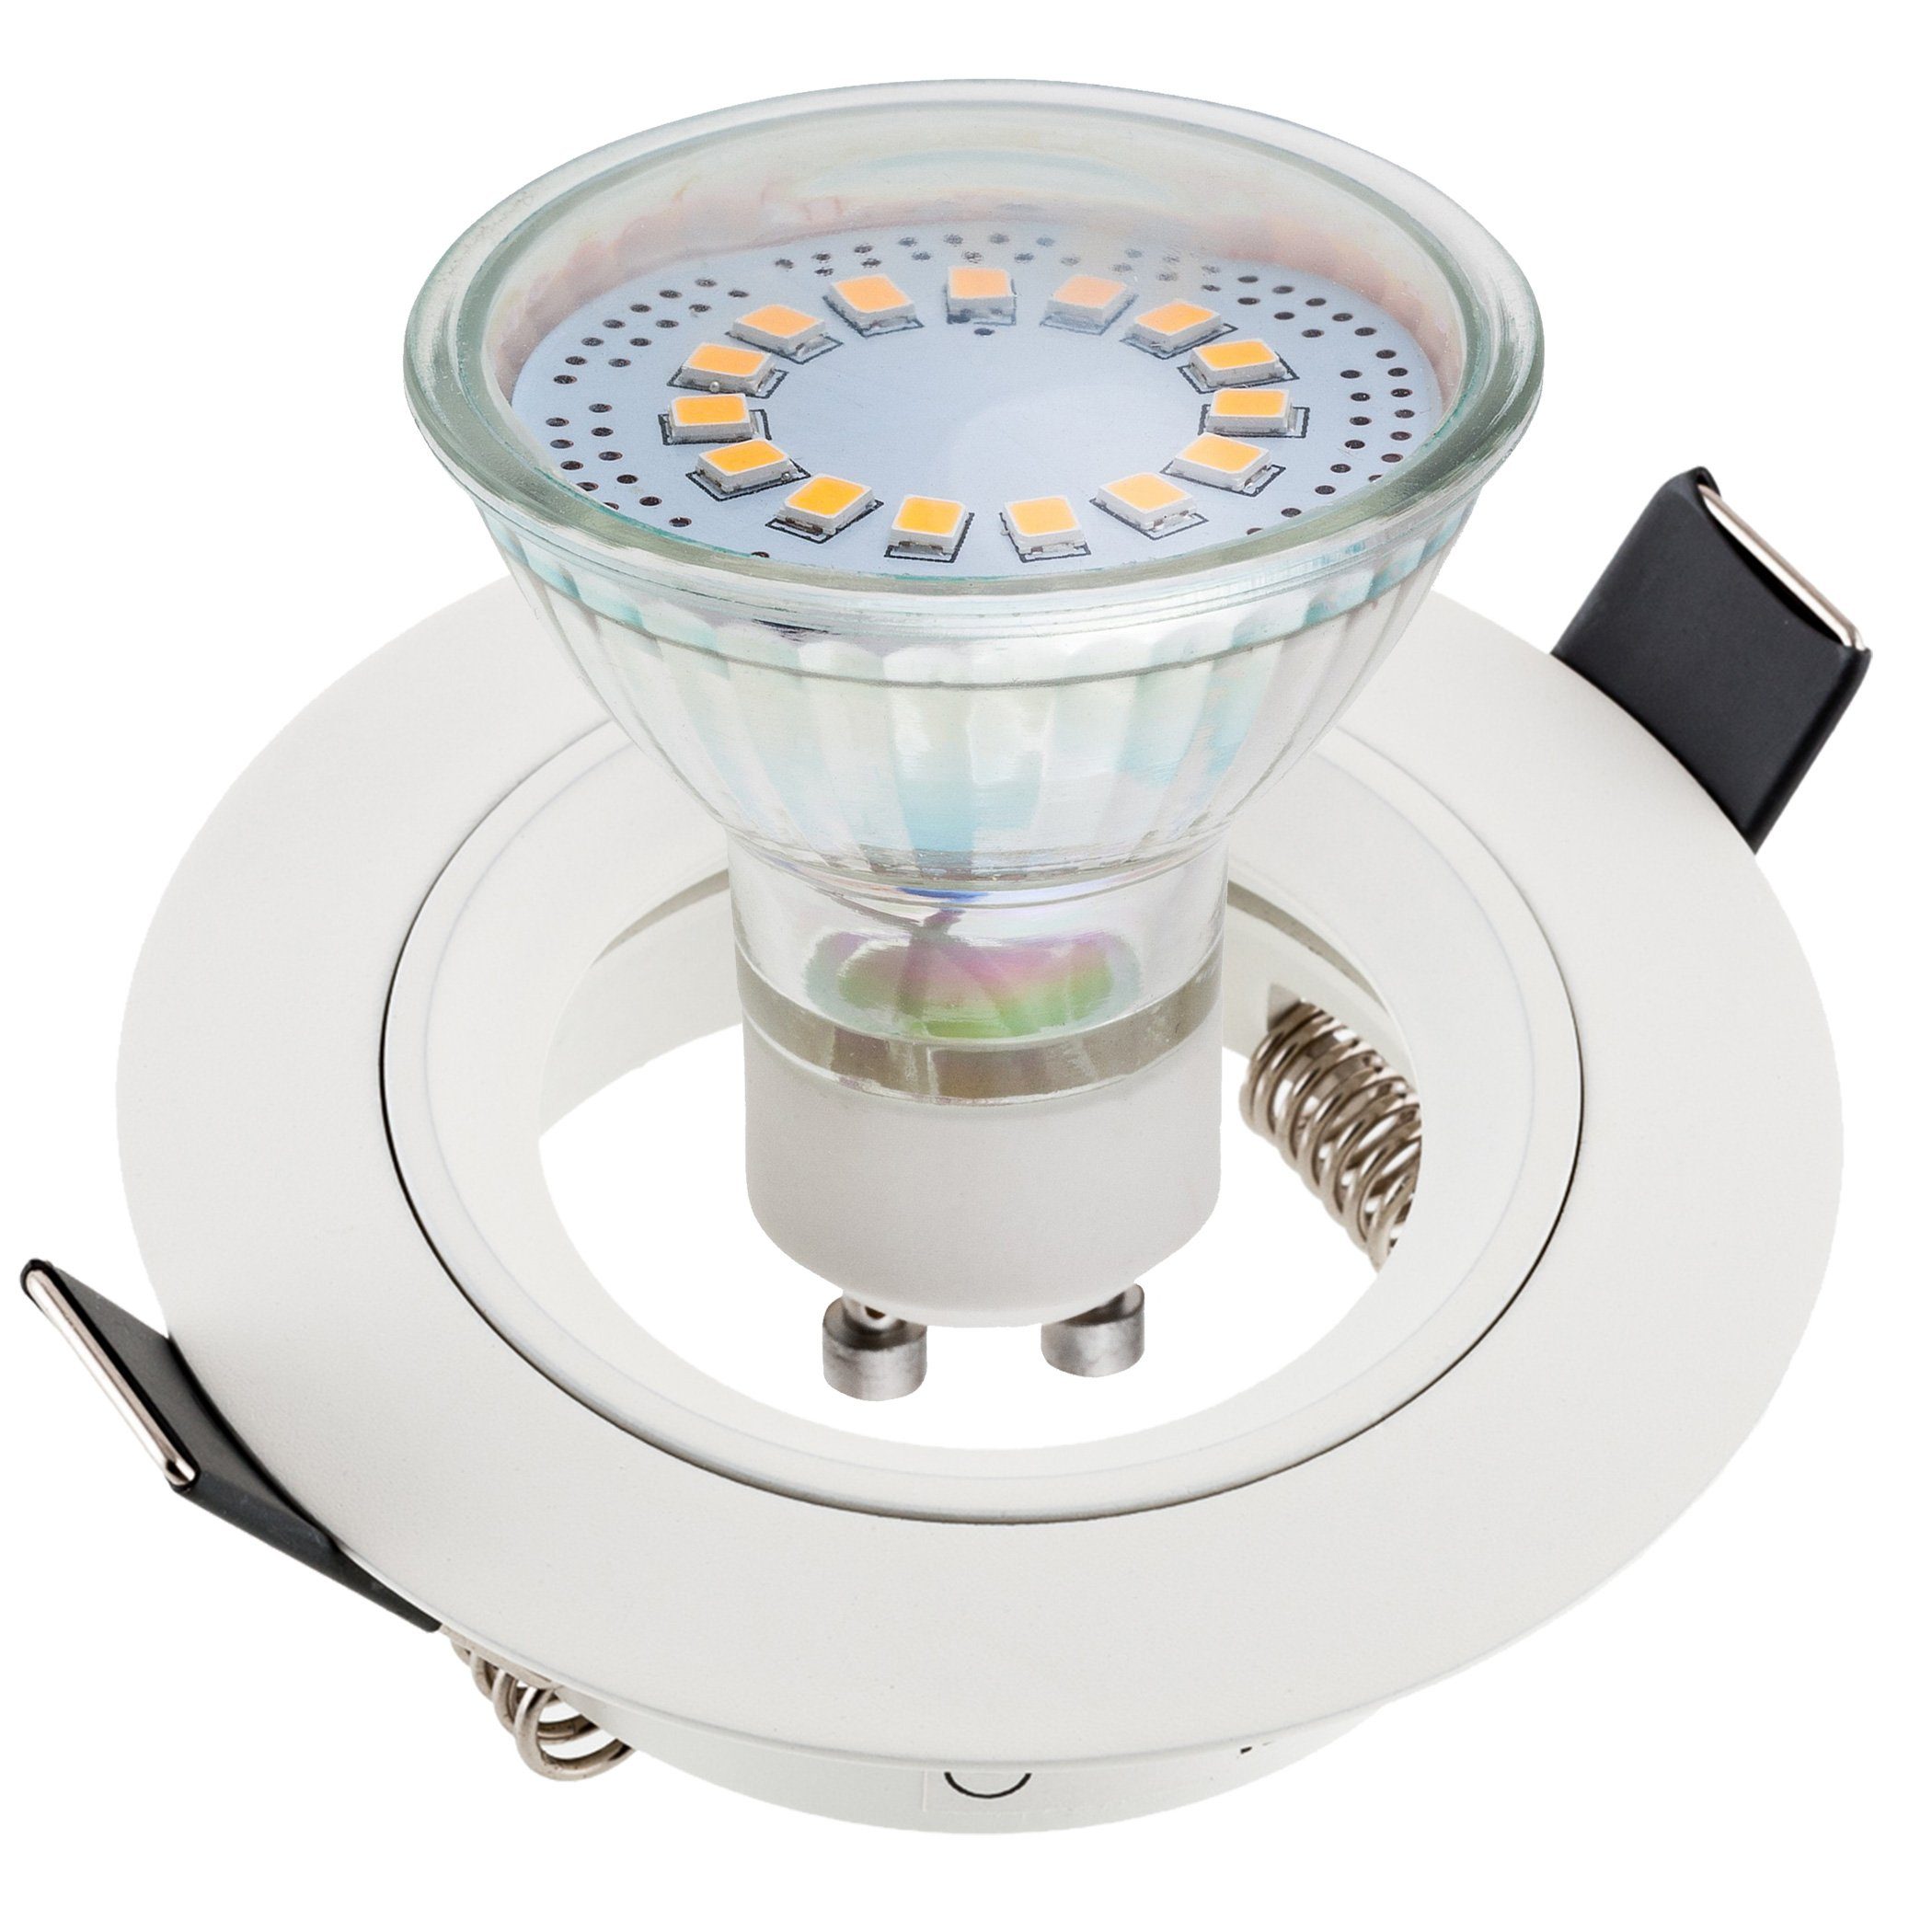 SEBSON LED Einbaustrahler Einbaustrahler rund Alu weiß inkl. GU10 LED Lampe  3,5W - Unterputz Decken Einbau Rahmen Lochdurchmesser 65mm